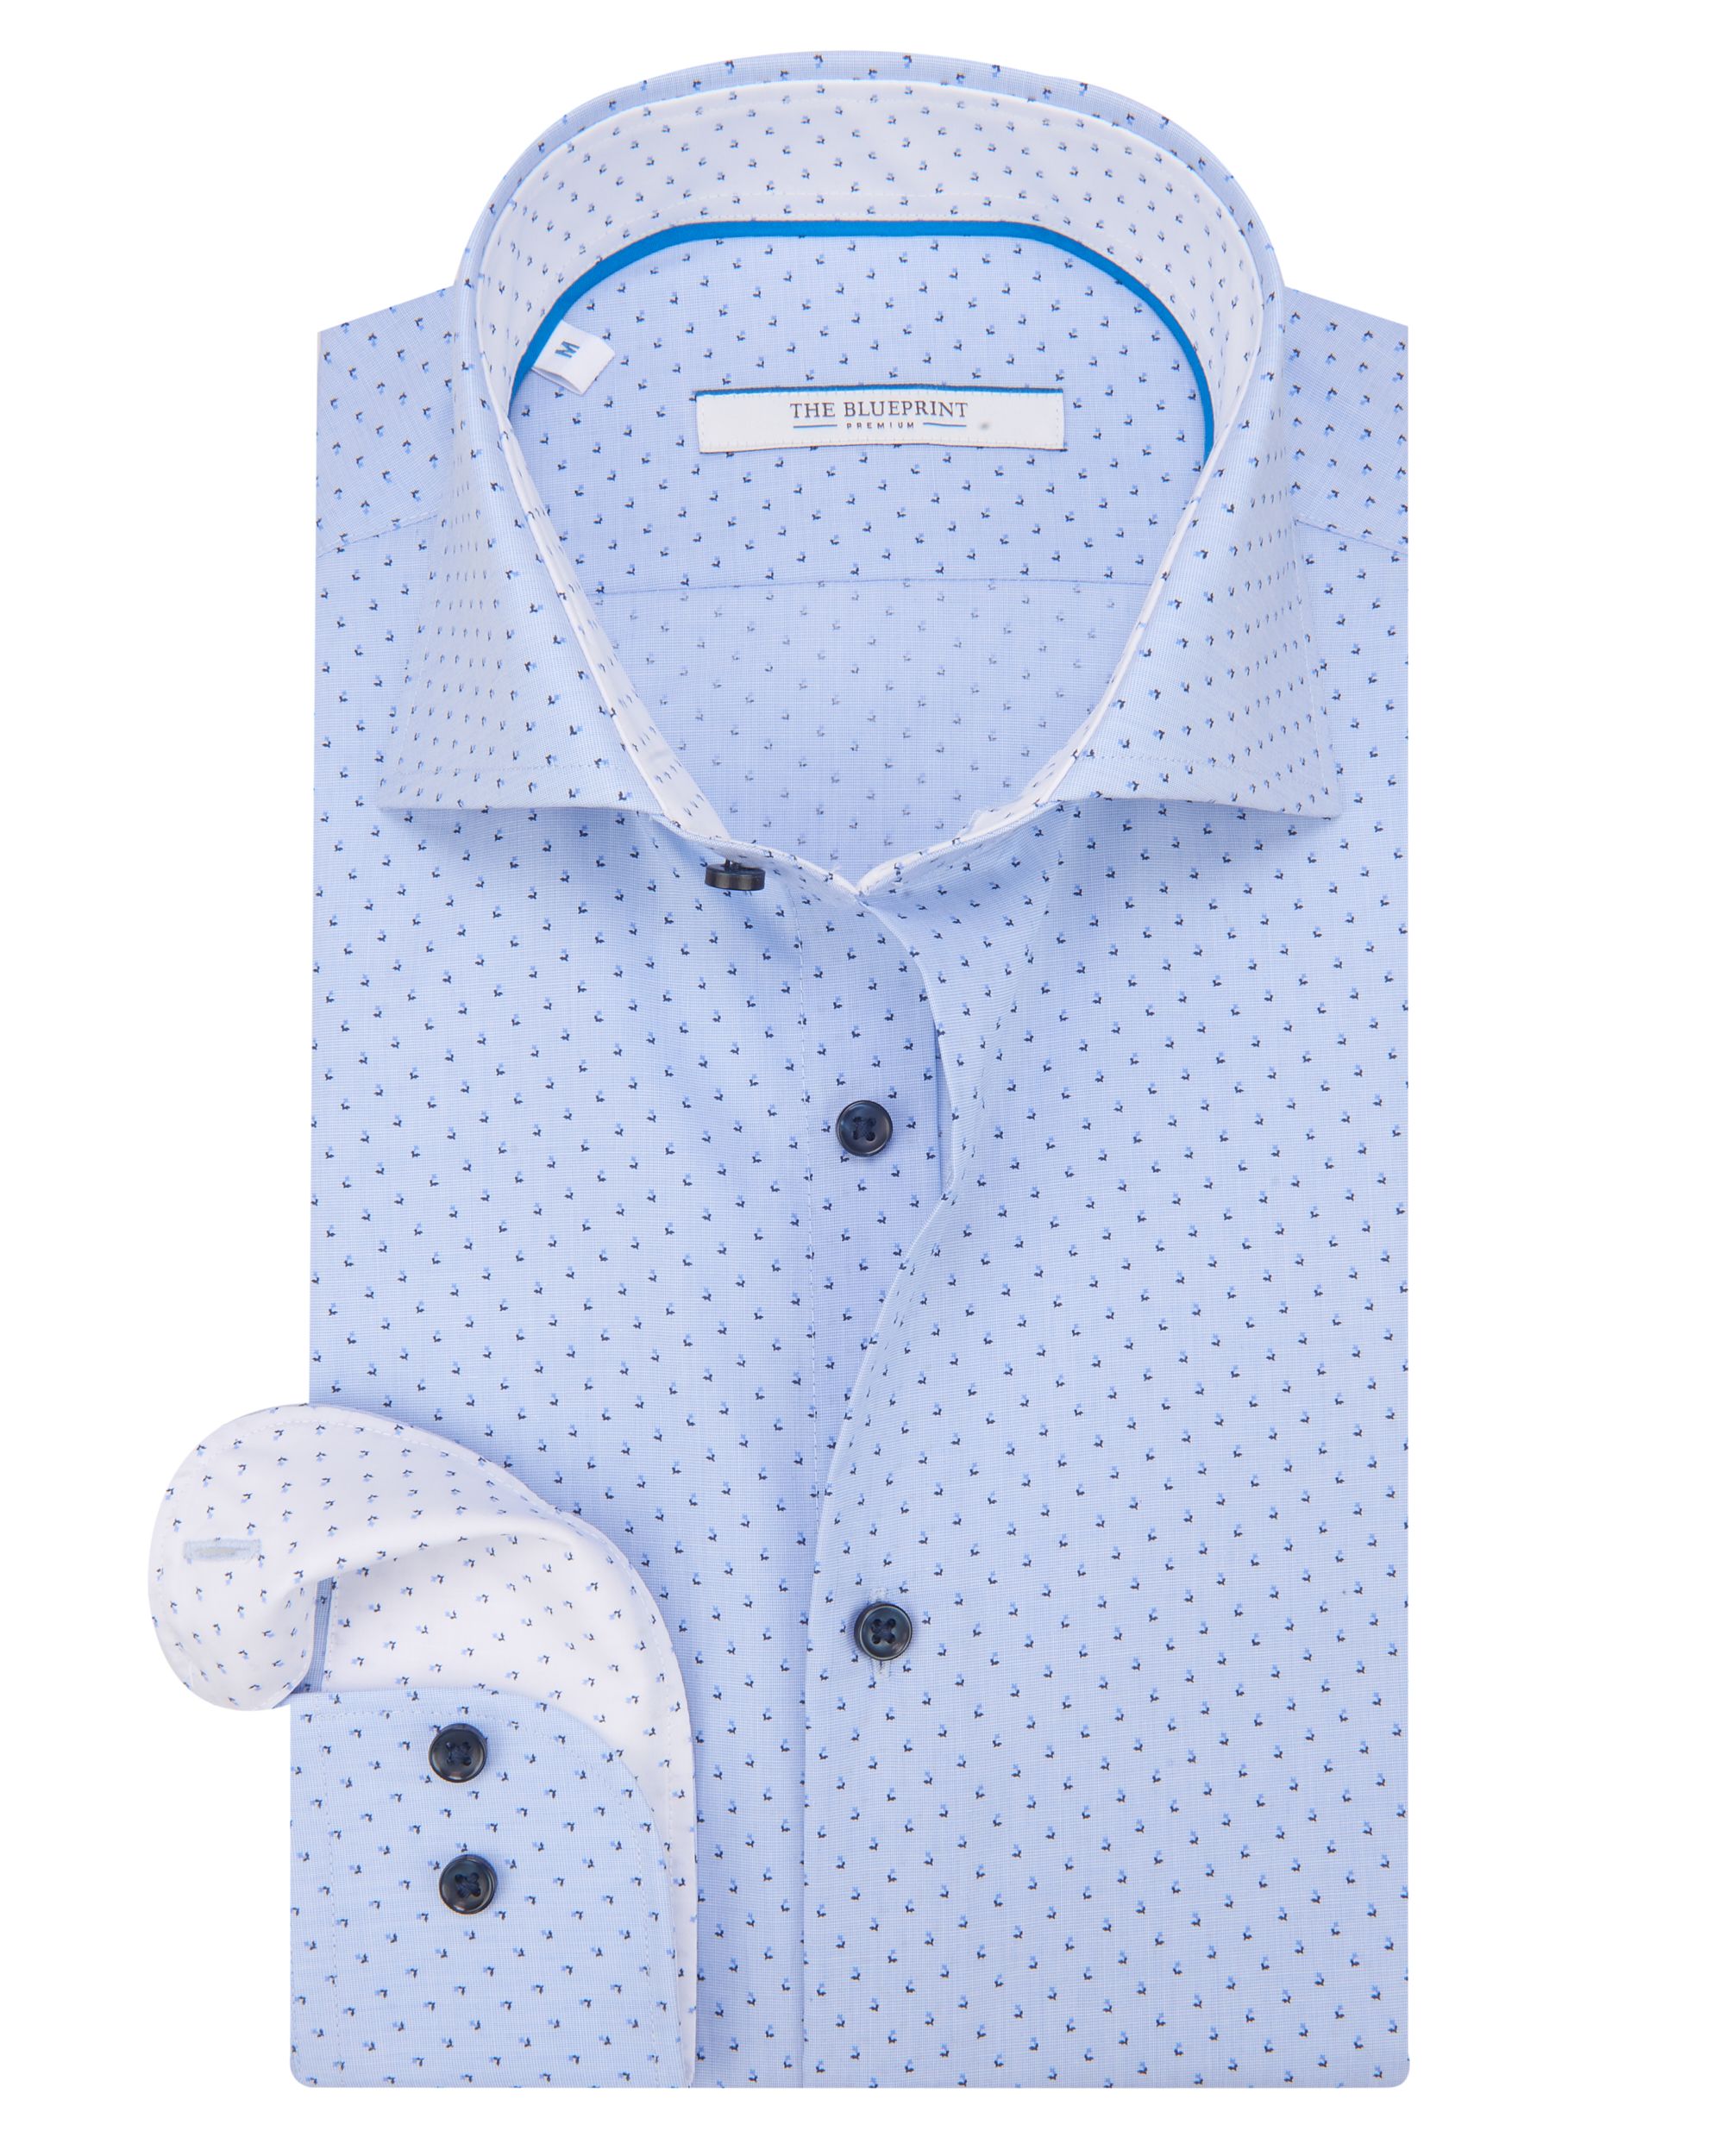 The BLUEPRINT Premium Trendy overhemd LM Lichtblauw dessin 078655-001-L